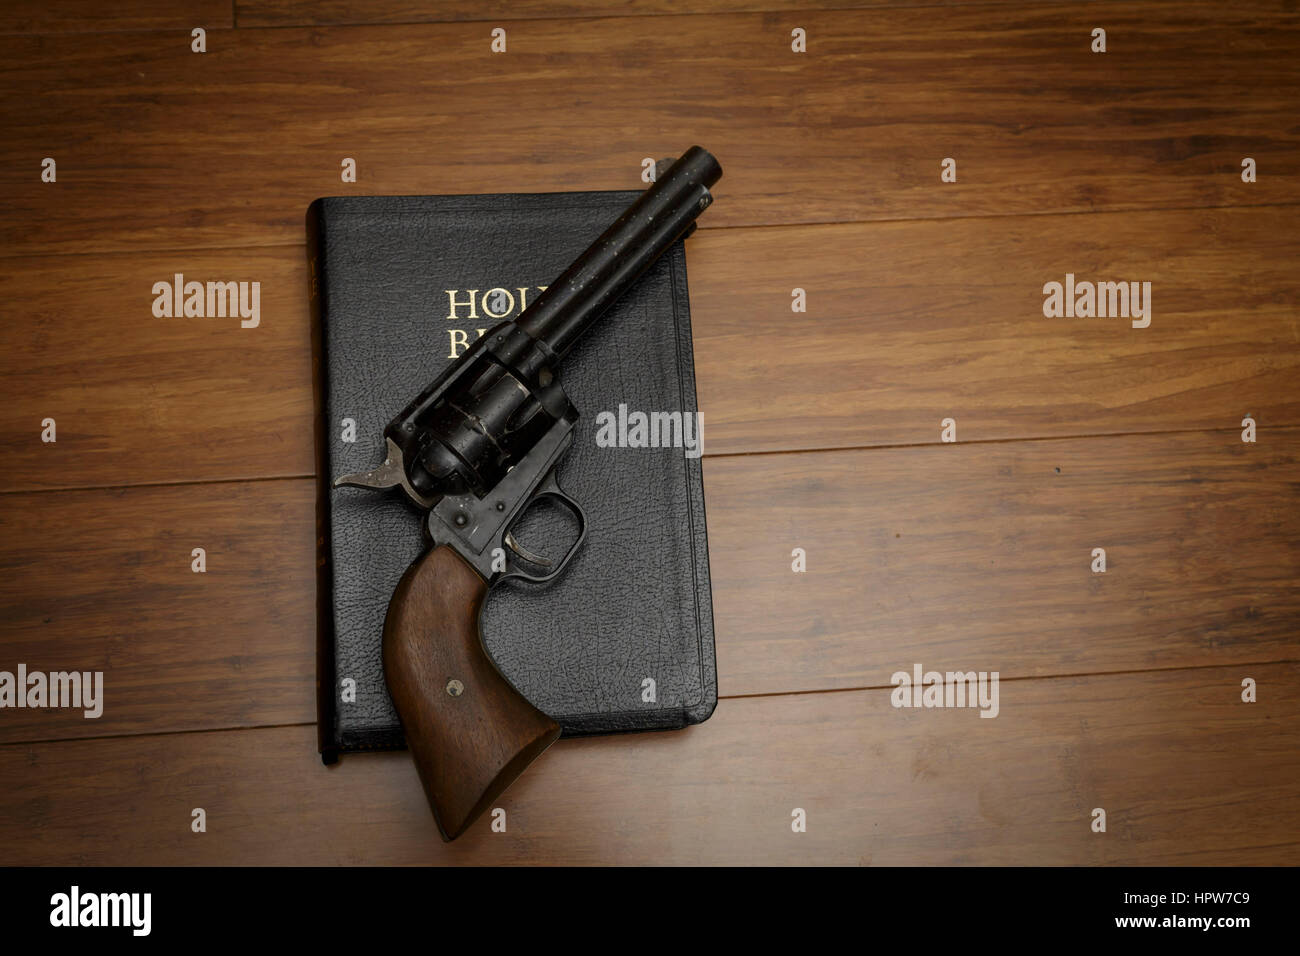 Bible Black Shotgun